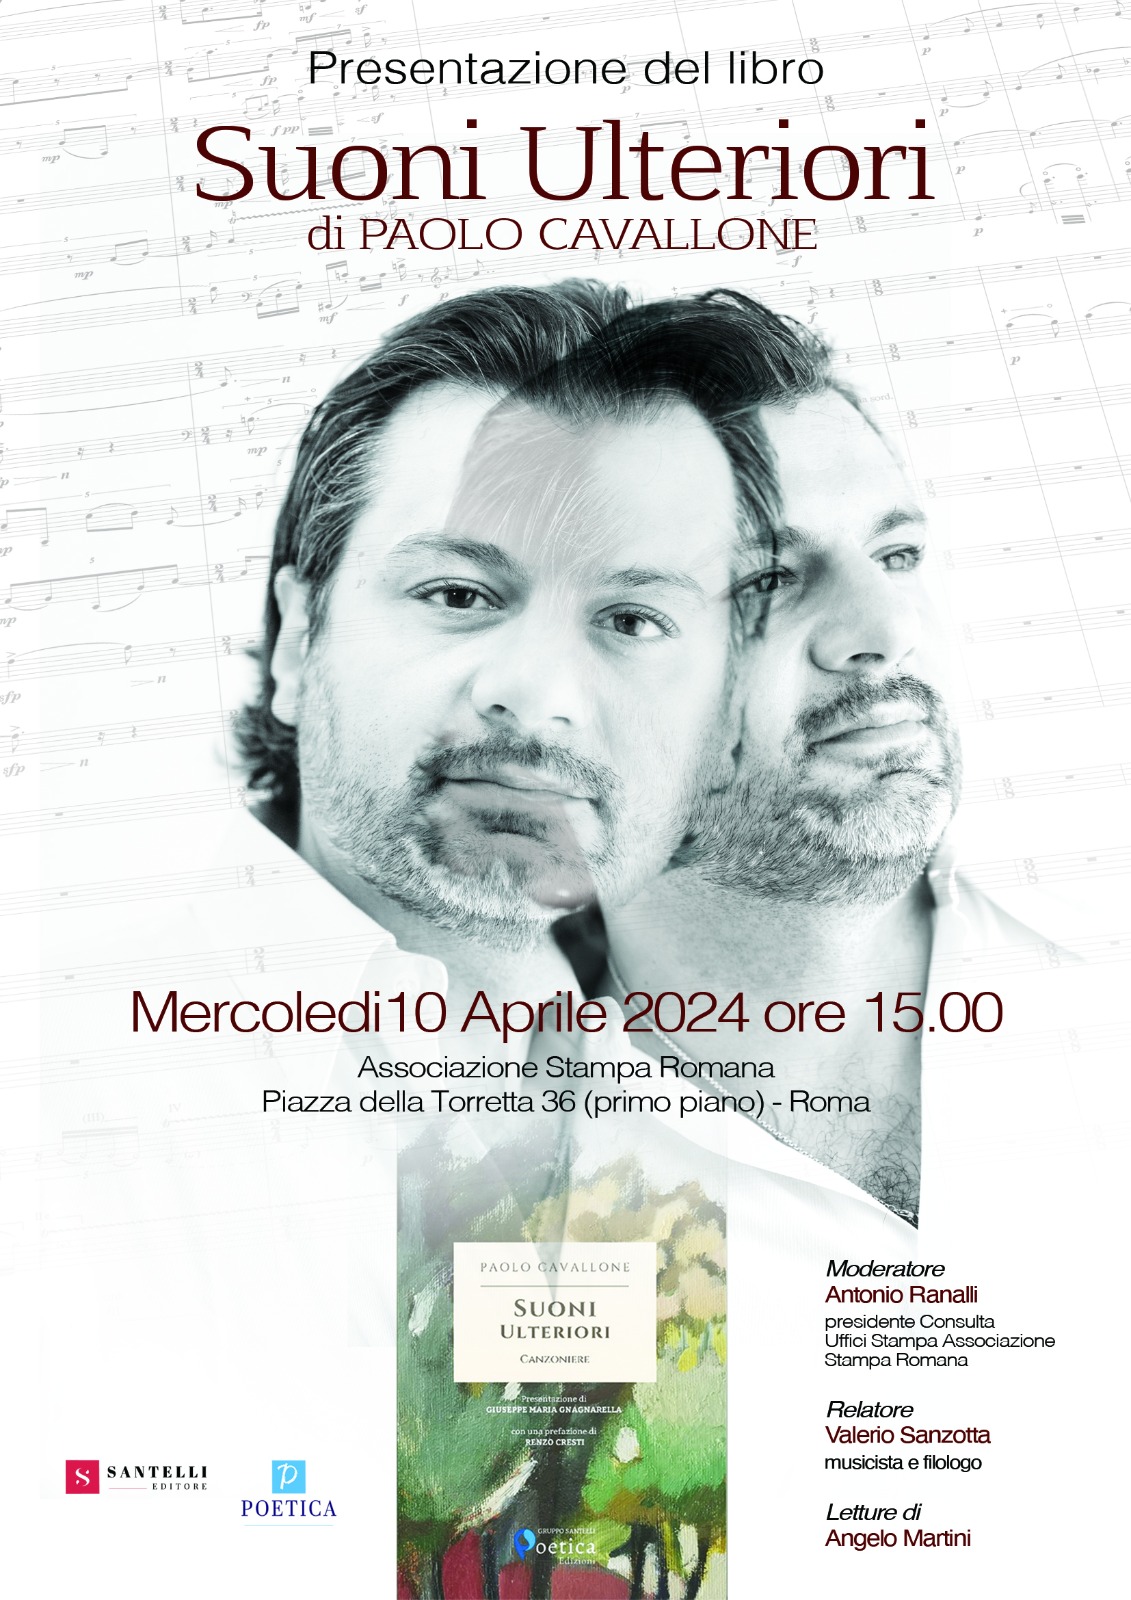 “Suoni Ulteriori”: Presentation at Stampa Romana – Rome on April 10, 2024